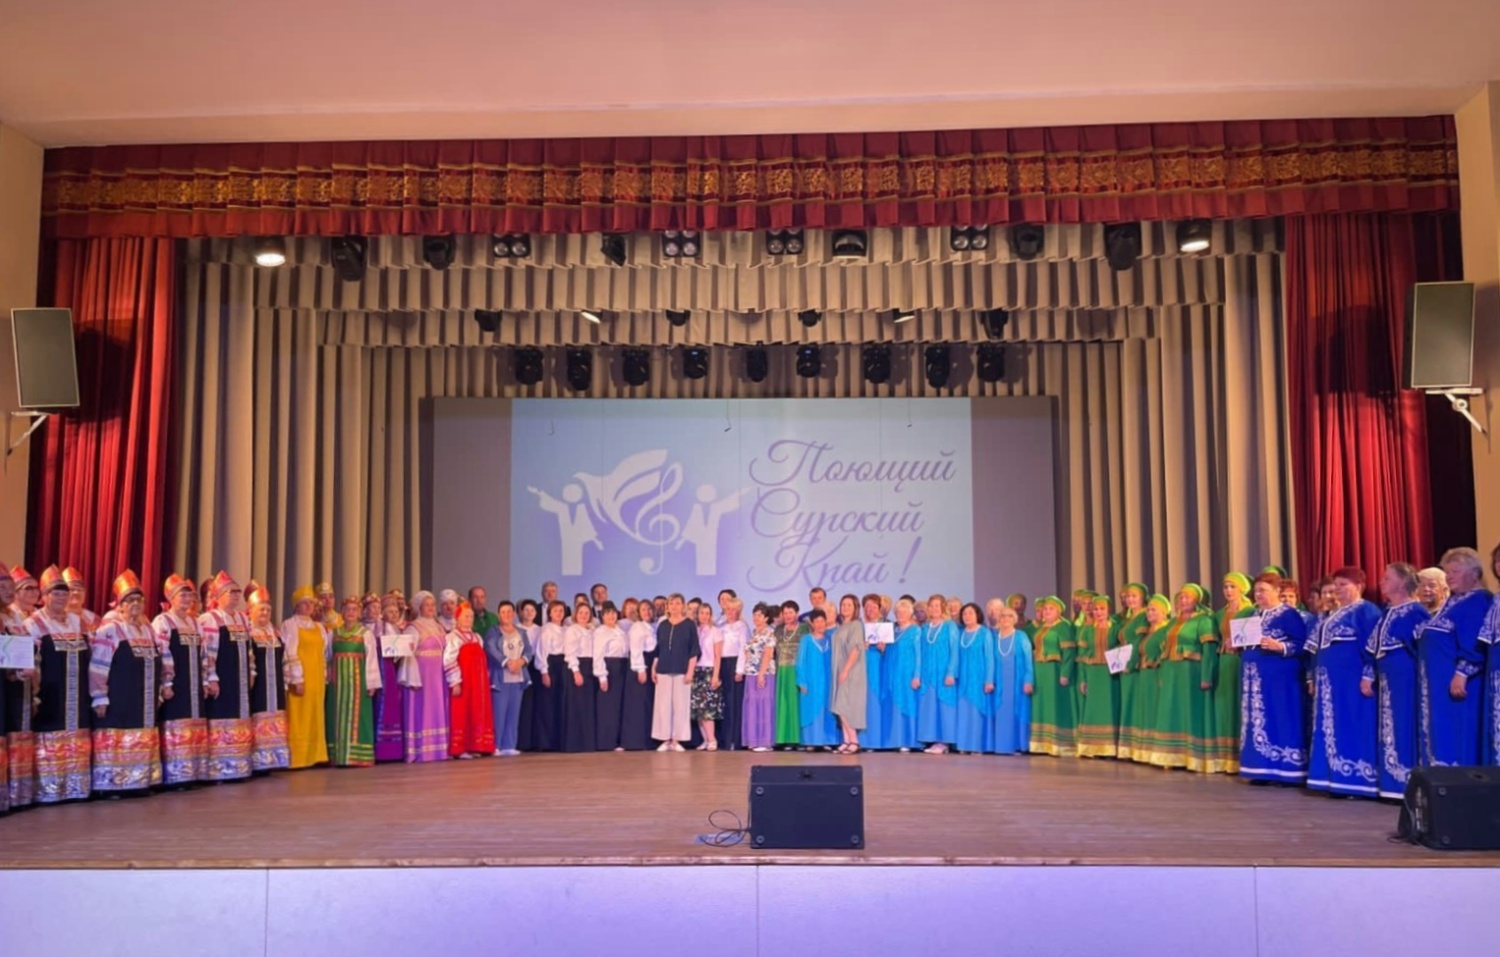 В ККЗ «Пенза» состоится Гала-концерт I хорового фестиваля «Поющий Сурский край!»